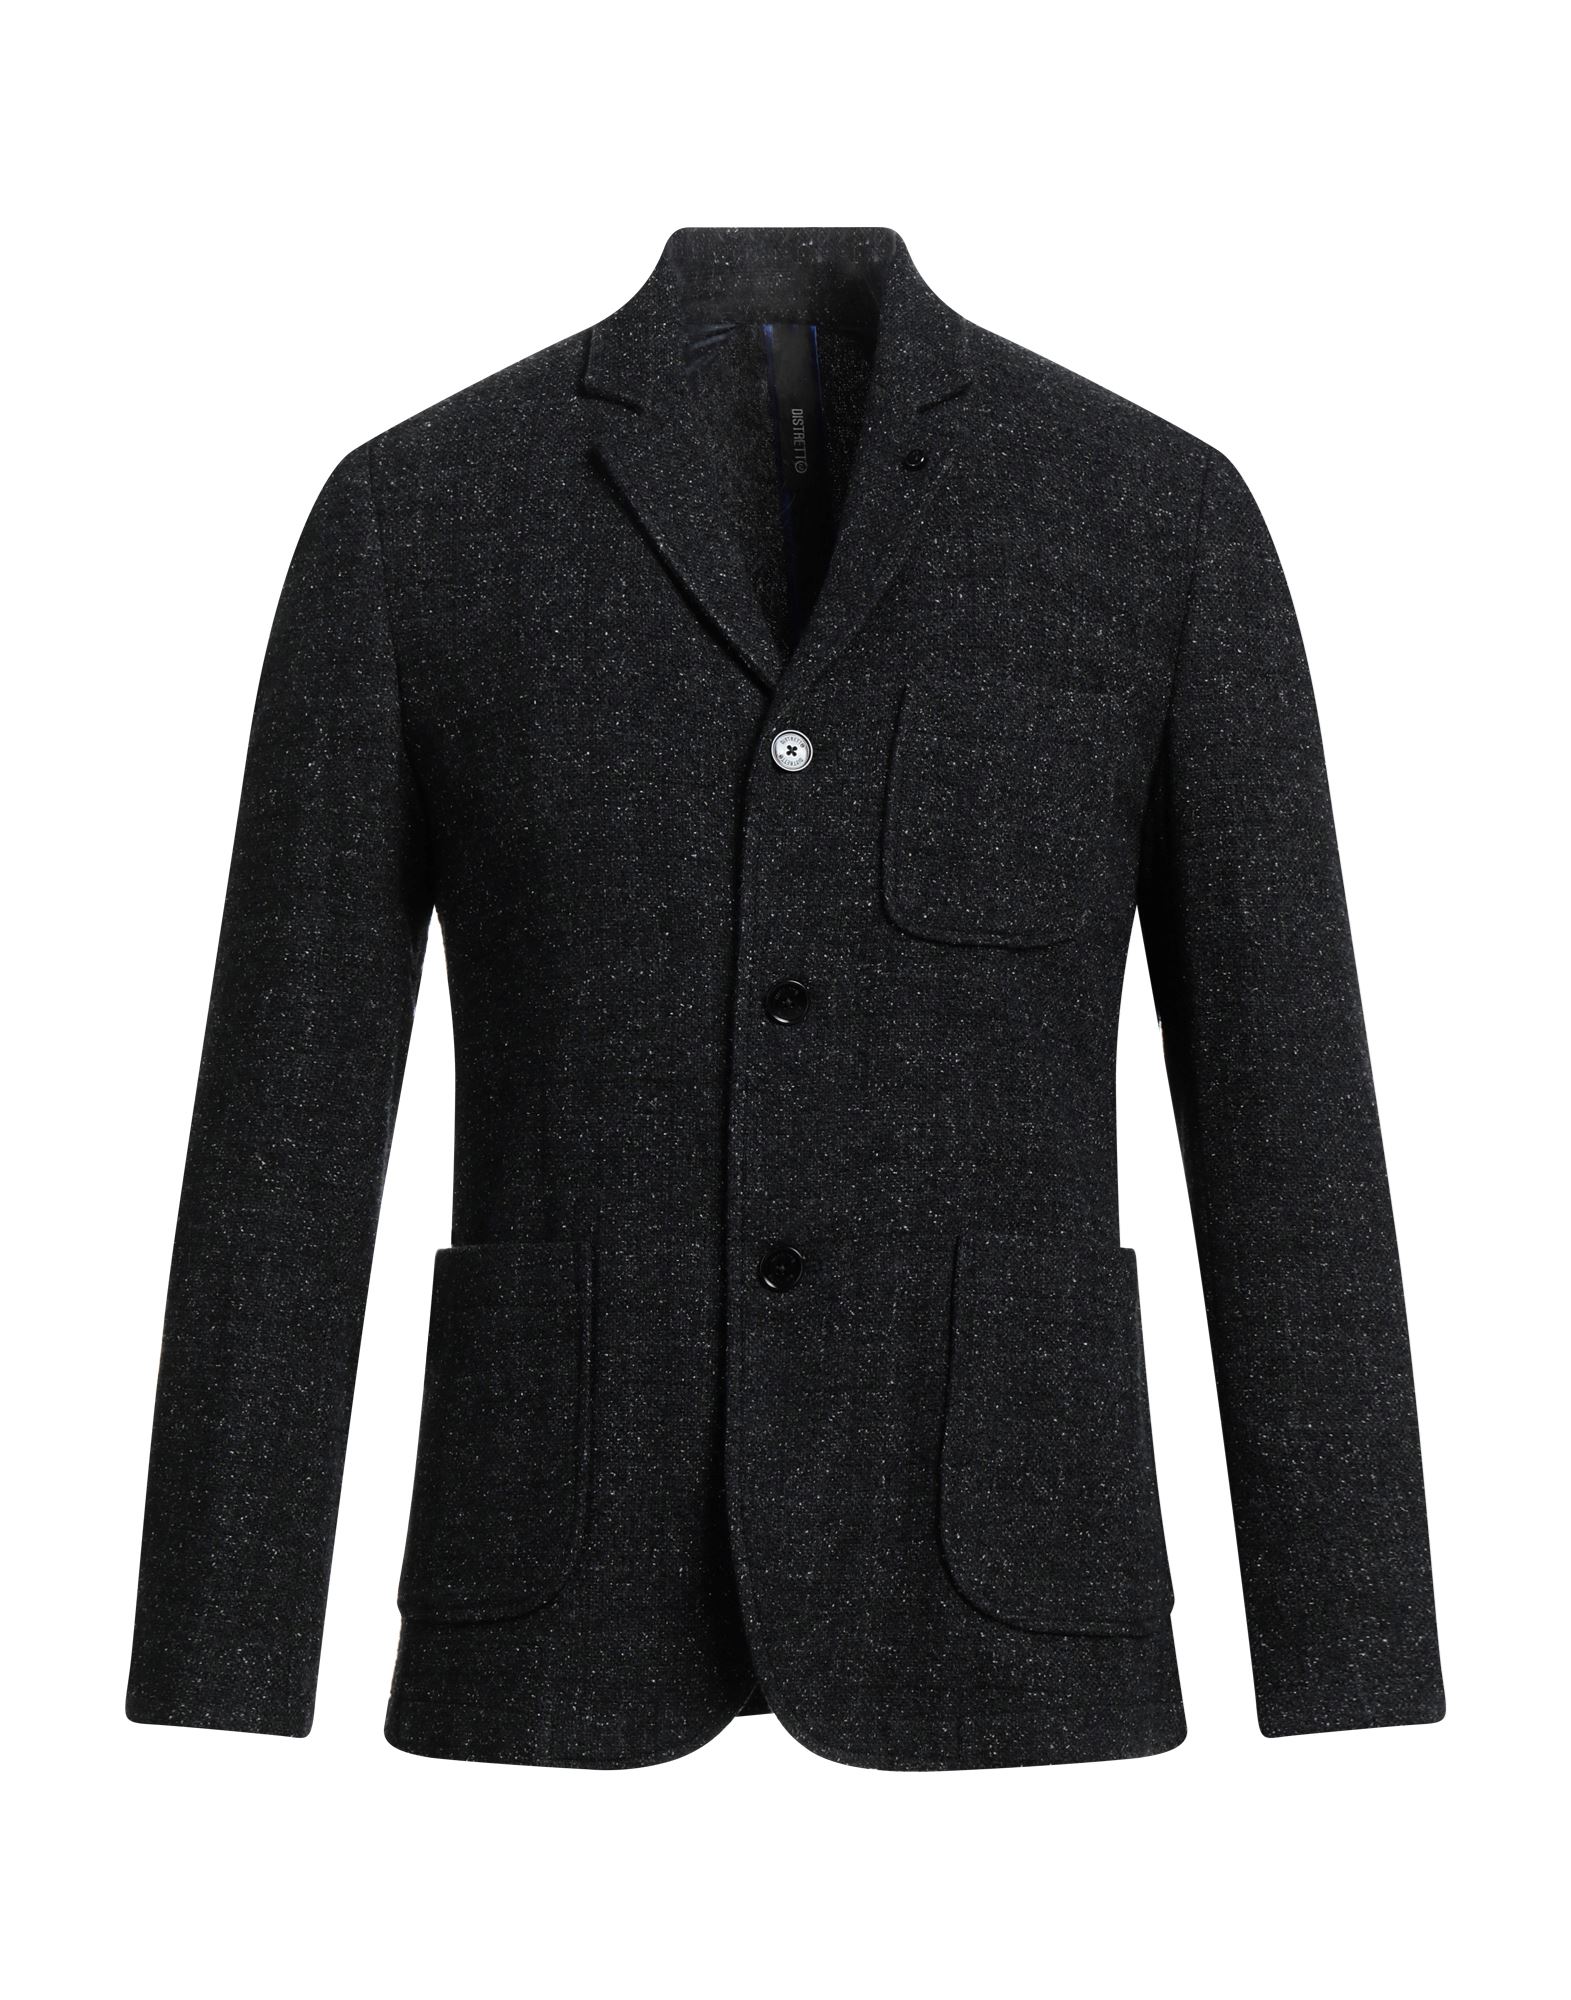 DISTRETTO 12 Suit jackets | Smart Closet